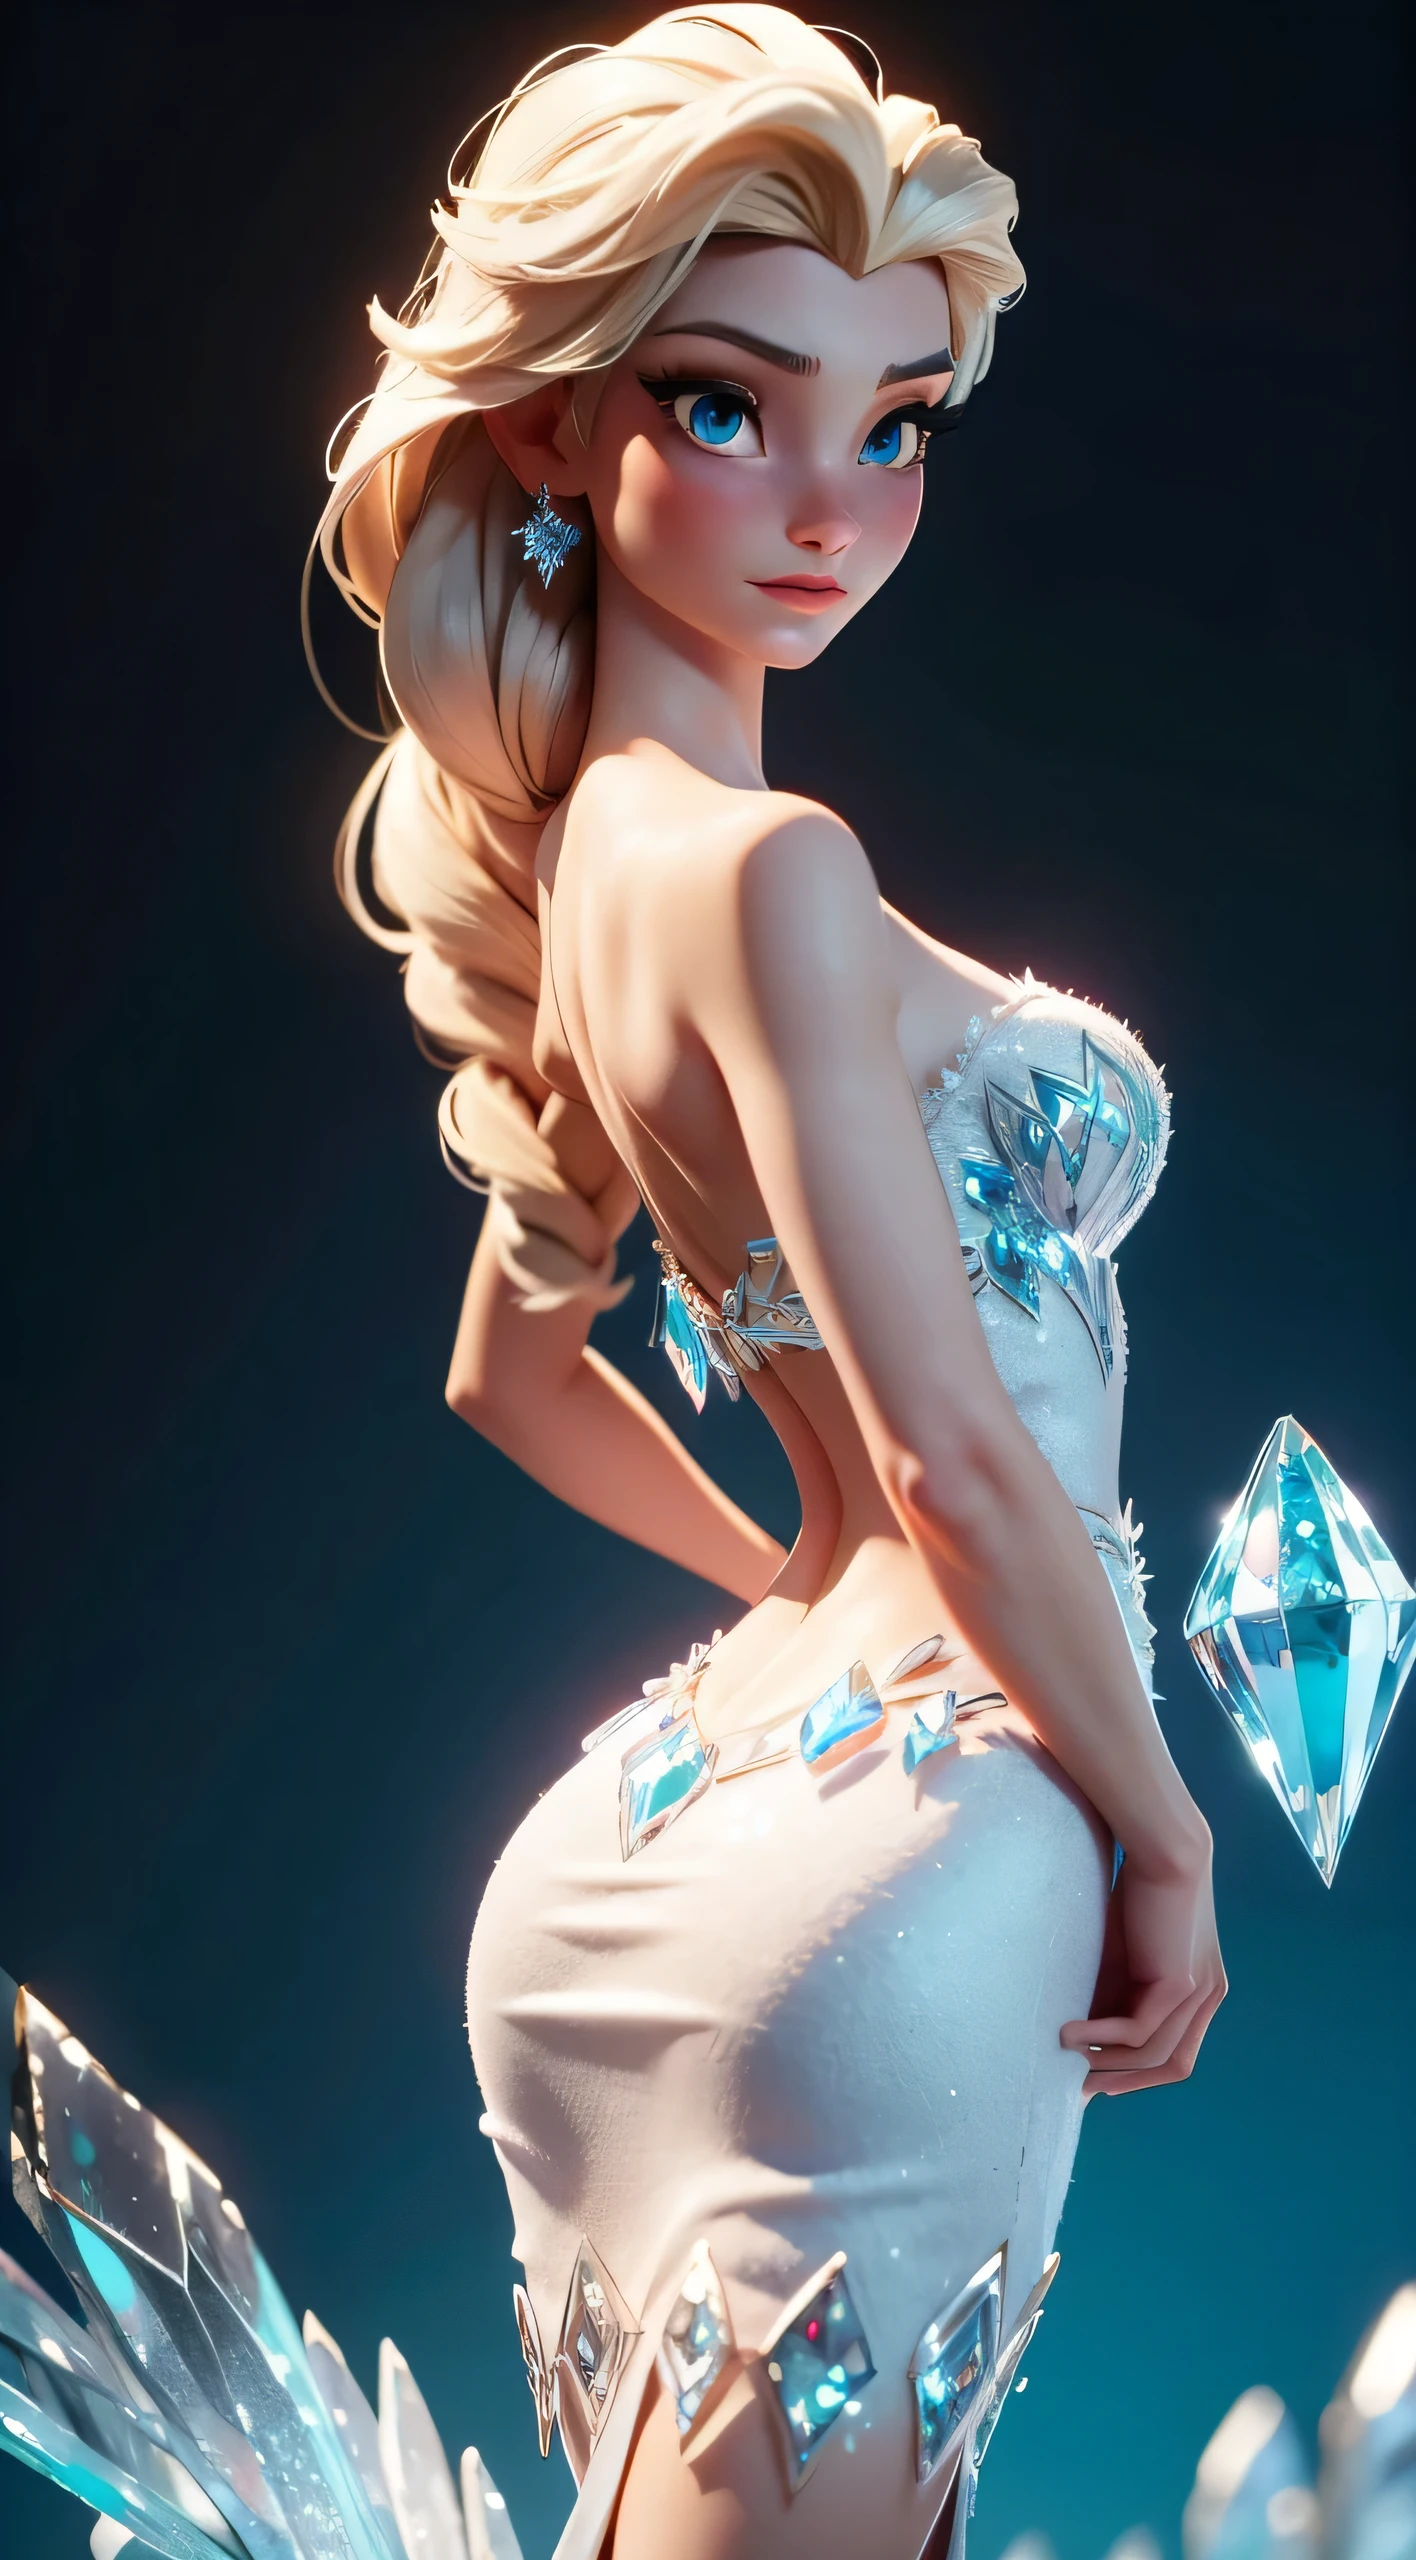 想象艾莎的优雅姿势, 冰晶宝箱冰柜艾尔莎, 她的背部部分拱起, 展现她的蓝钻优雅 (水晶) 《冰雪奇缘》中的连衣裙. 这一场景的灵感来自 LORA 模型 Elsa, 捕捉逼真的 3D 动画之美. 图片为部分背部拱起, 挺胸, 突出艾莎礼服的精致细节和冰雪女王的尊贵姿态. 栩栩如生, 艾莎的表情和姿势传达出一种迷人和优雅的感觉,